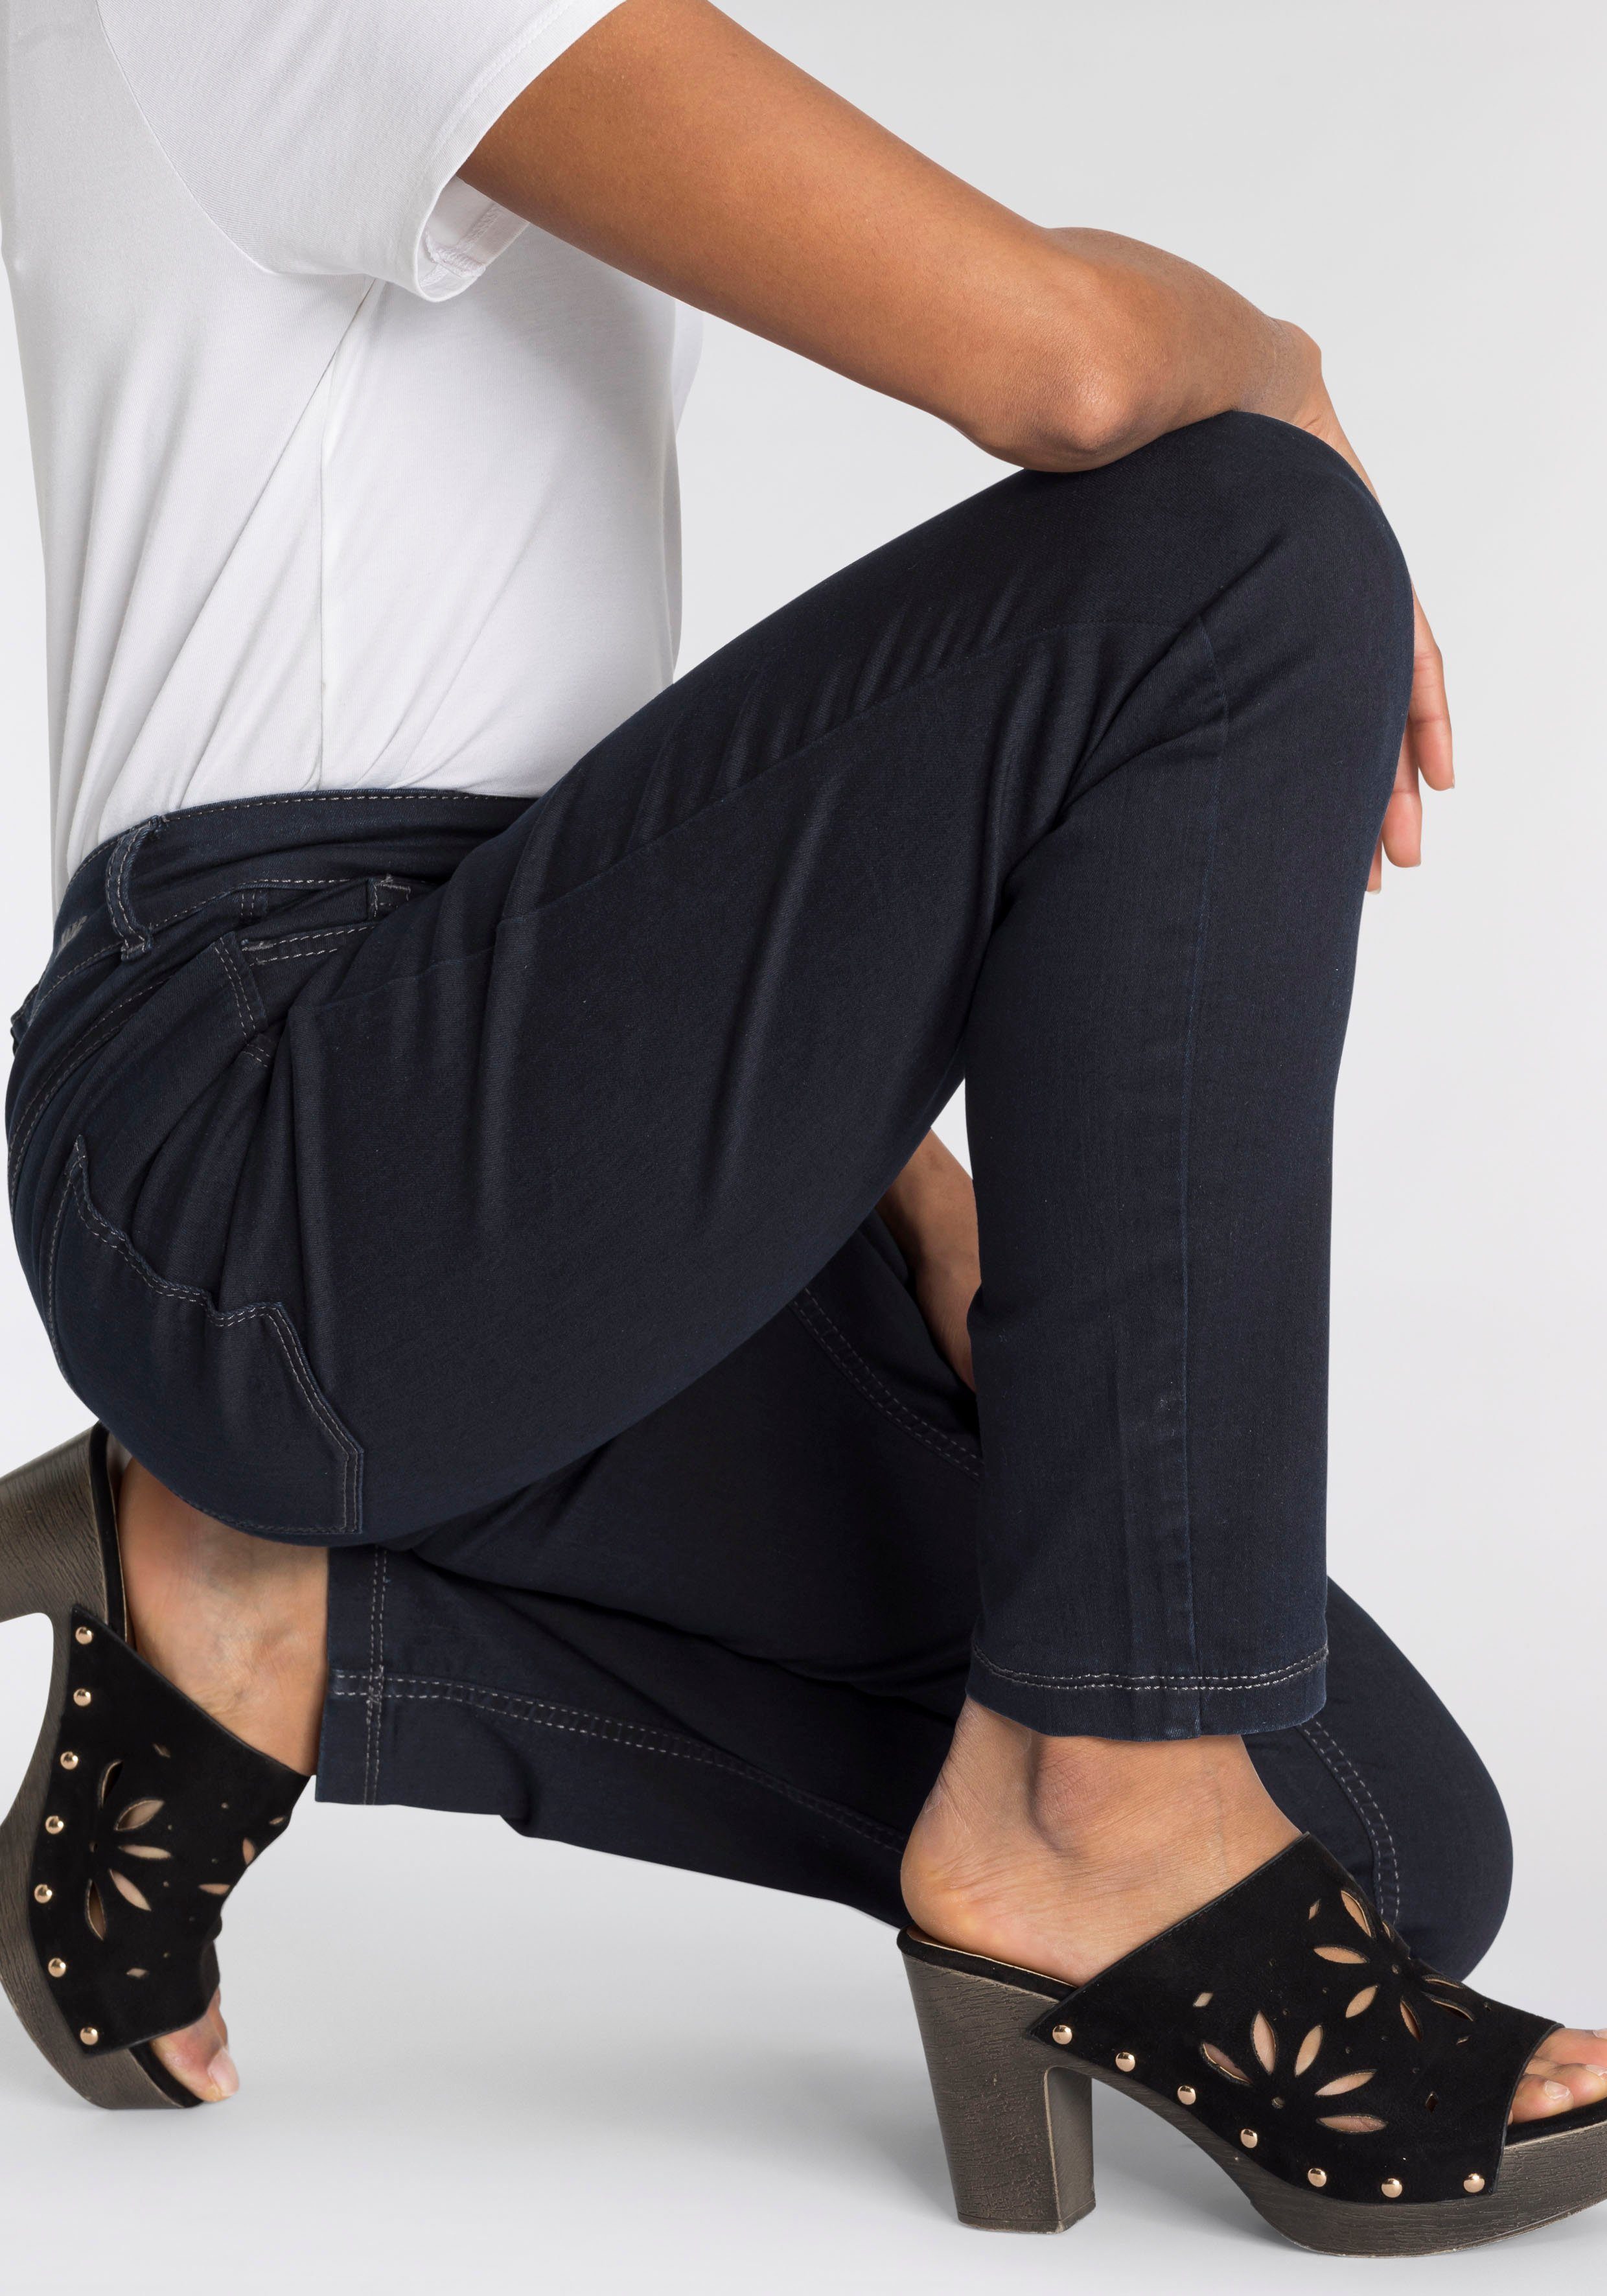 Hiperstretch-Skinny Skinny-fit-Jeans Power-Stretch MAC rinsed Tag den blue ganzen Qualität dark bequem sitzt